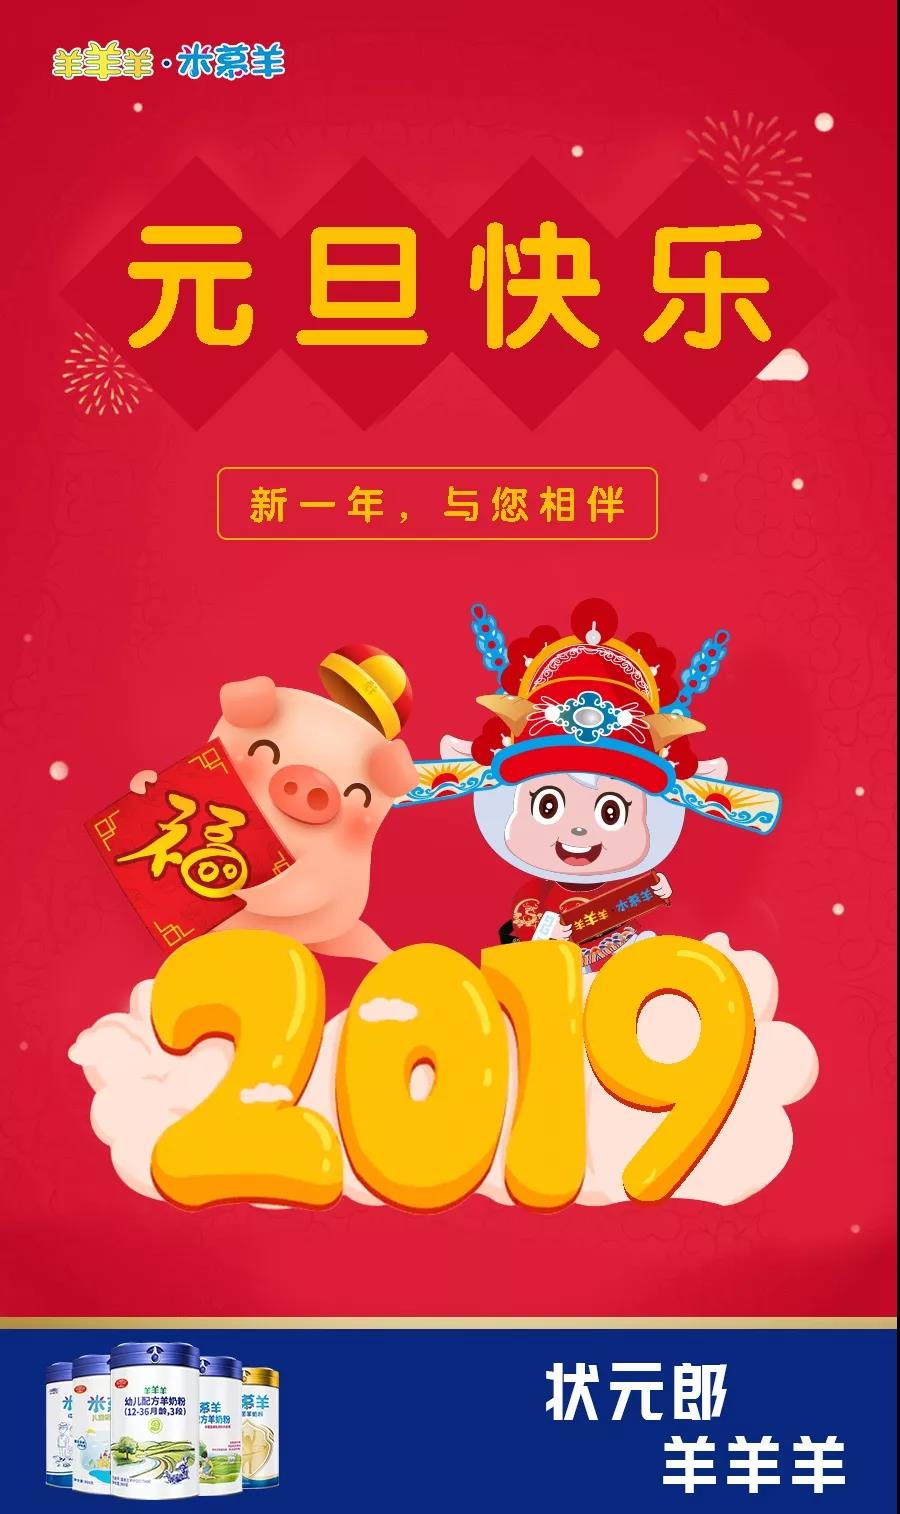 “羊羊羊·米慕羊”节日 I 2019，元旦快乐